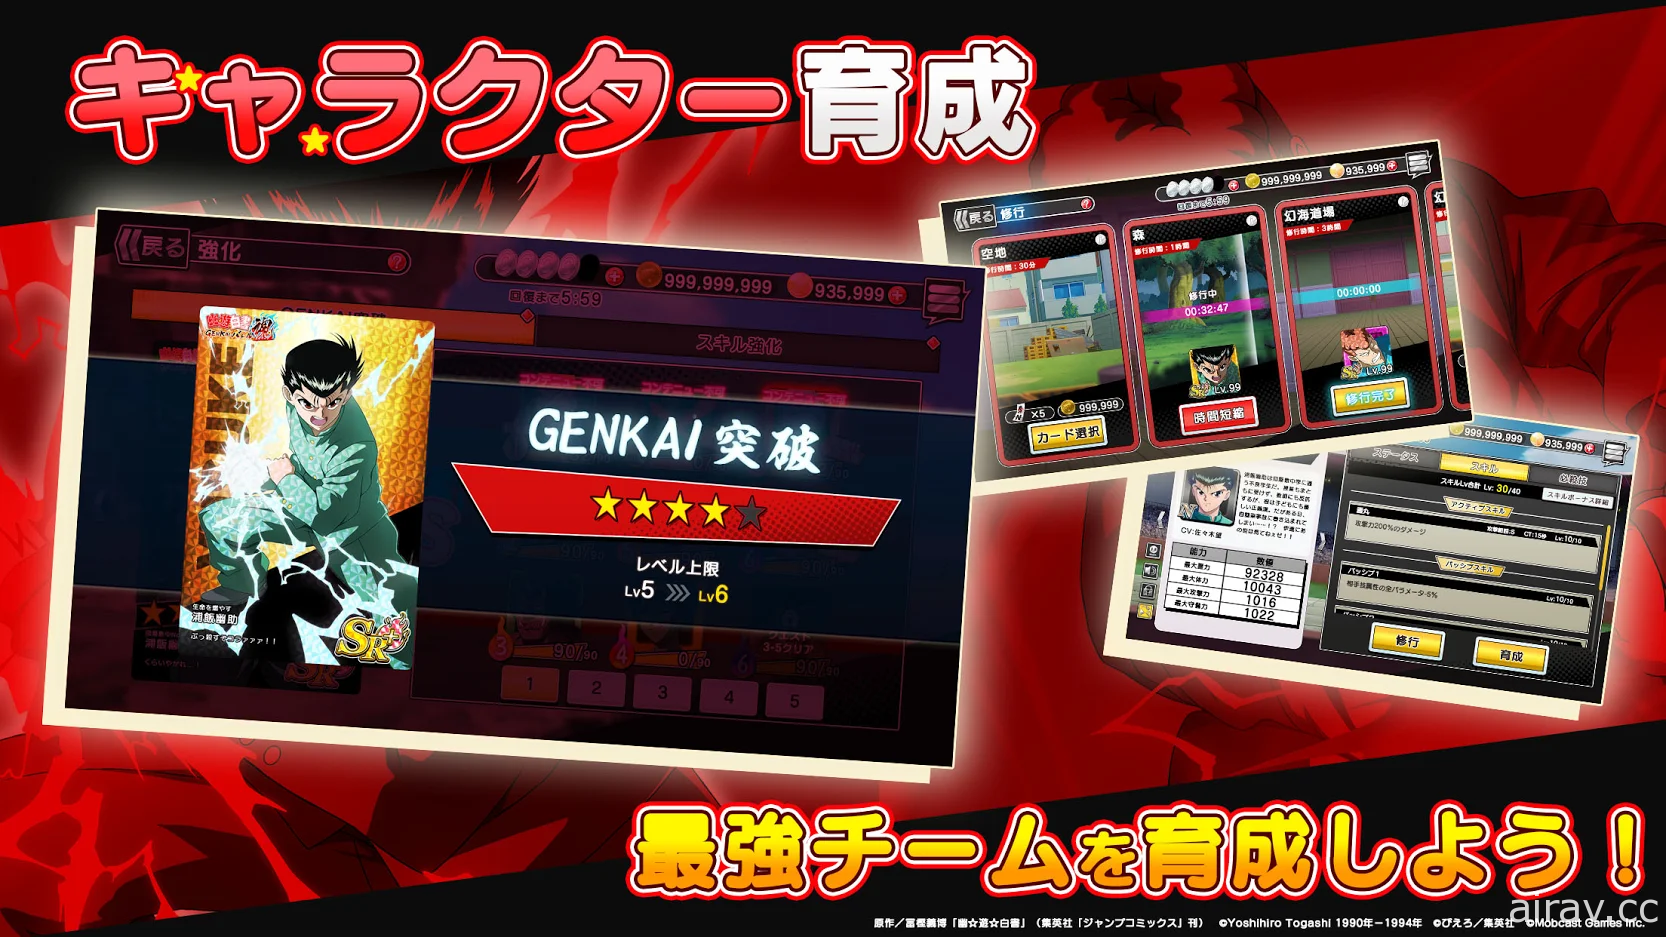 角色育成型动作 RPG《幽☆游☆白书 GENKAI 战魂》确定 5 月 19 日于日本上市